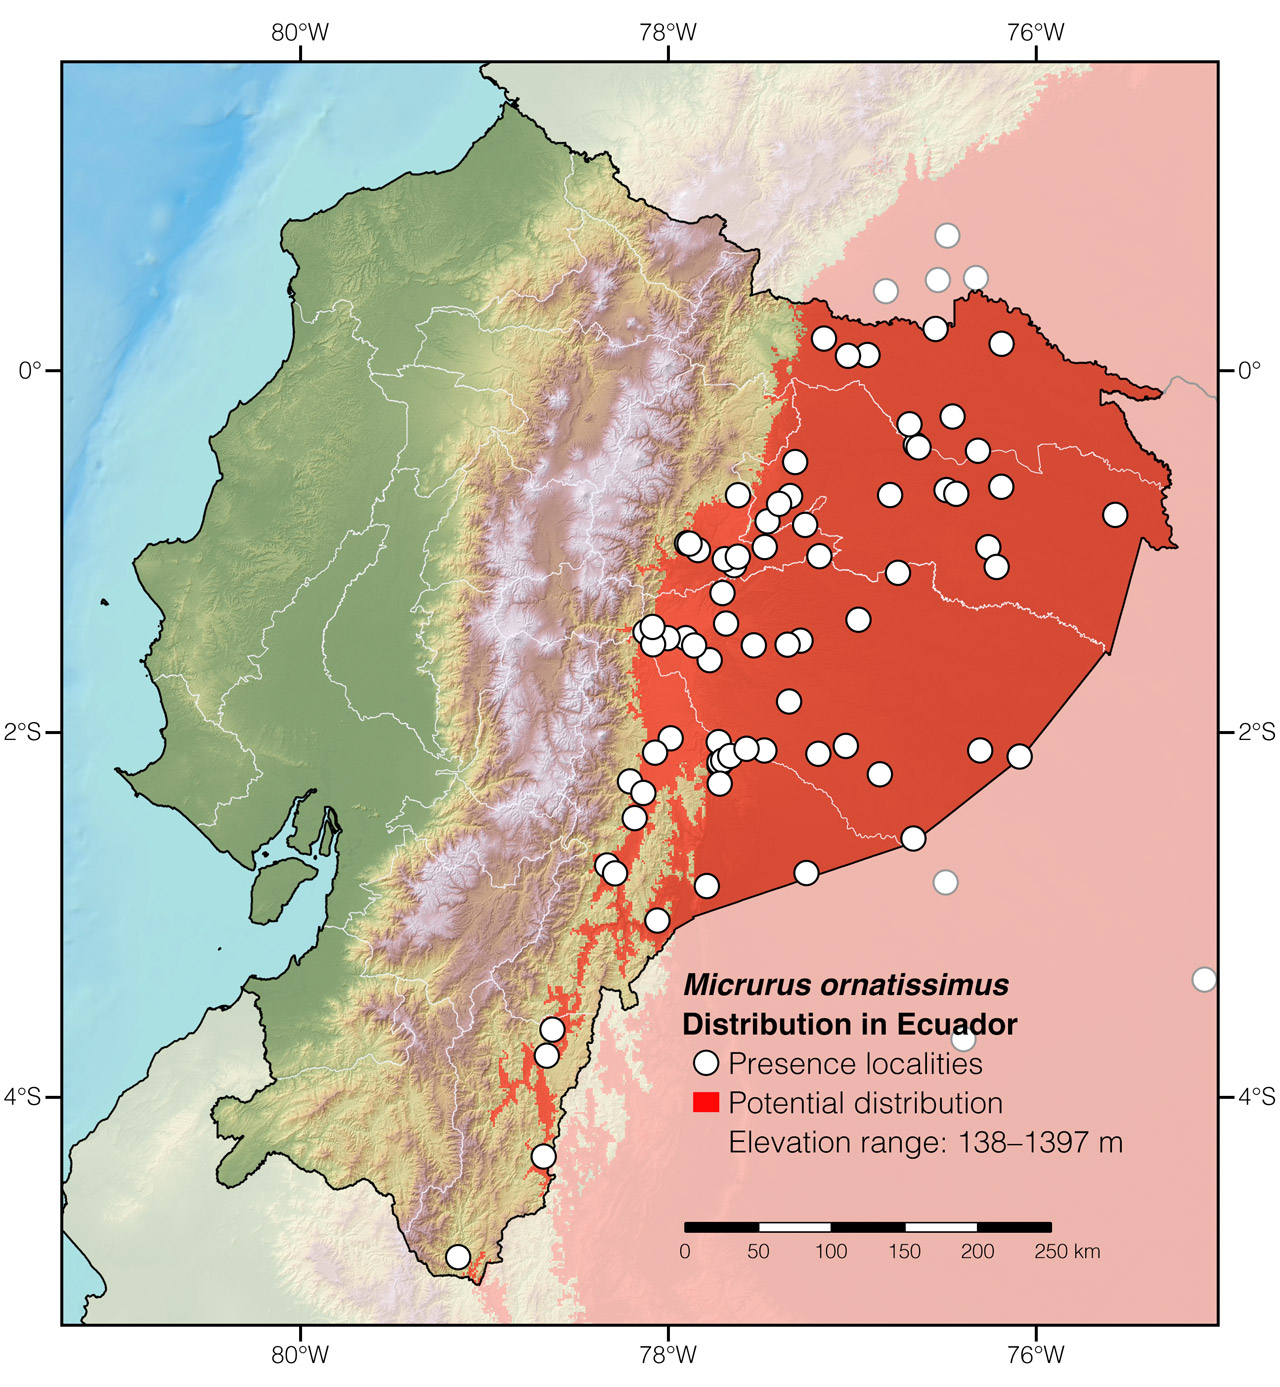 Distribution of Micrurus ornatissimus in Ecuador